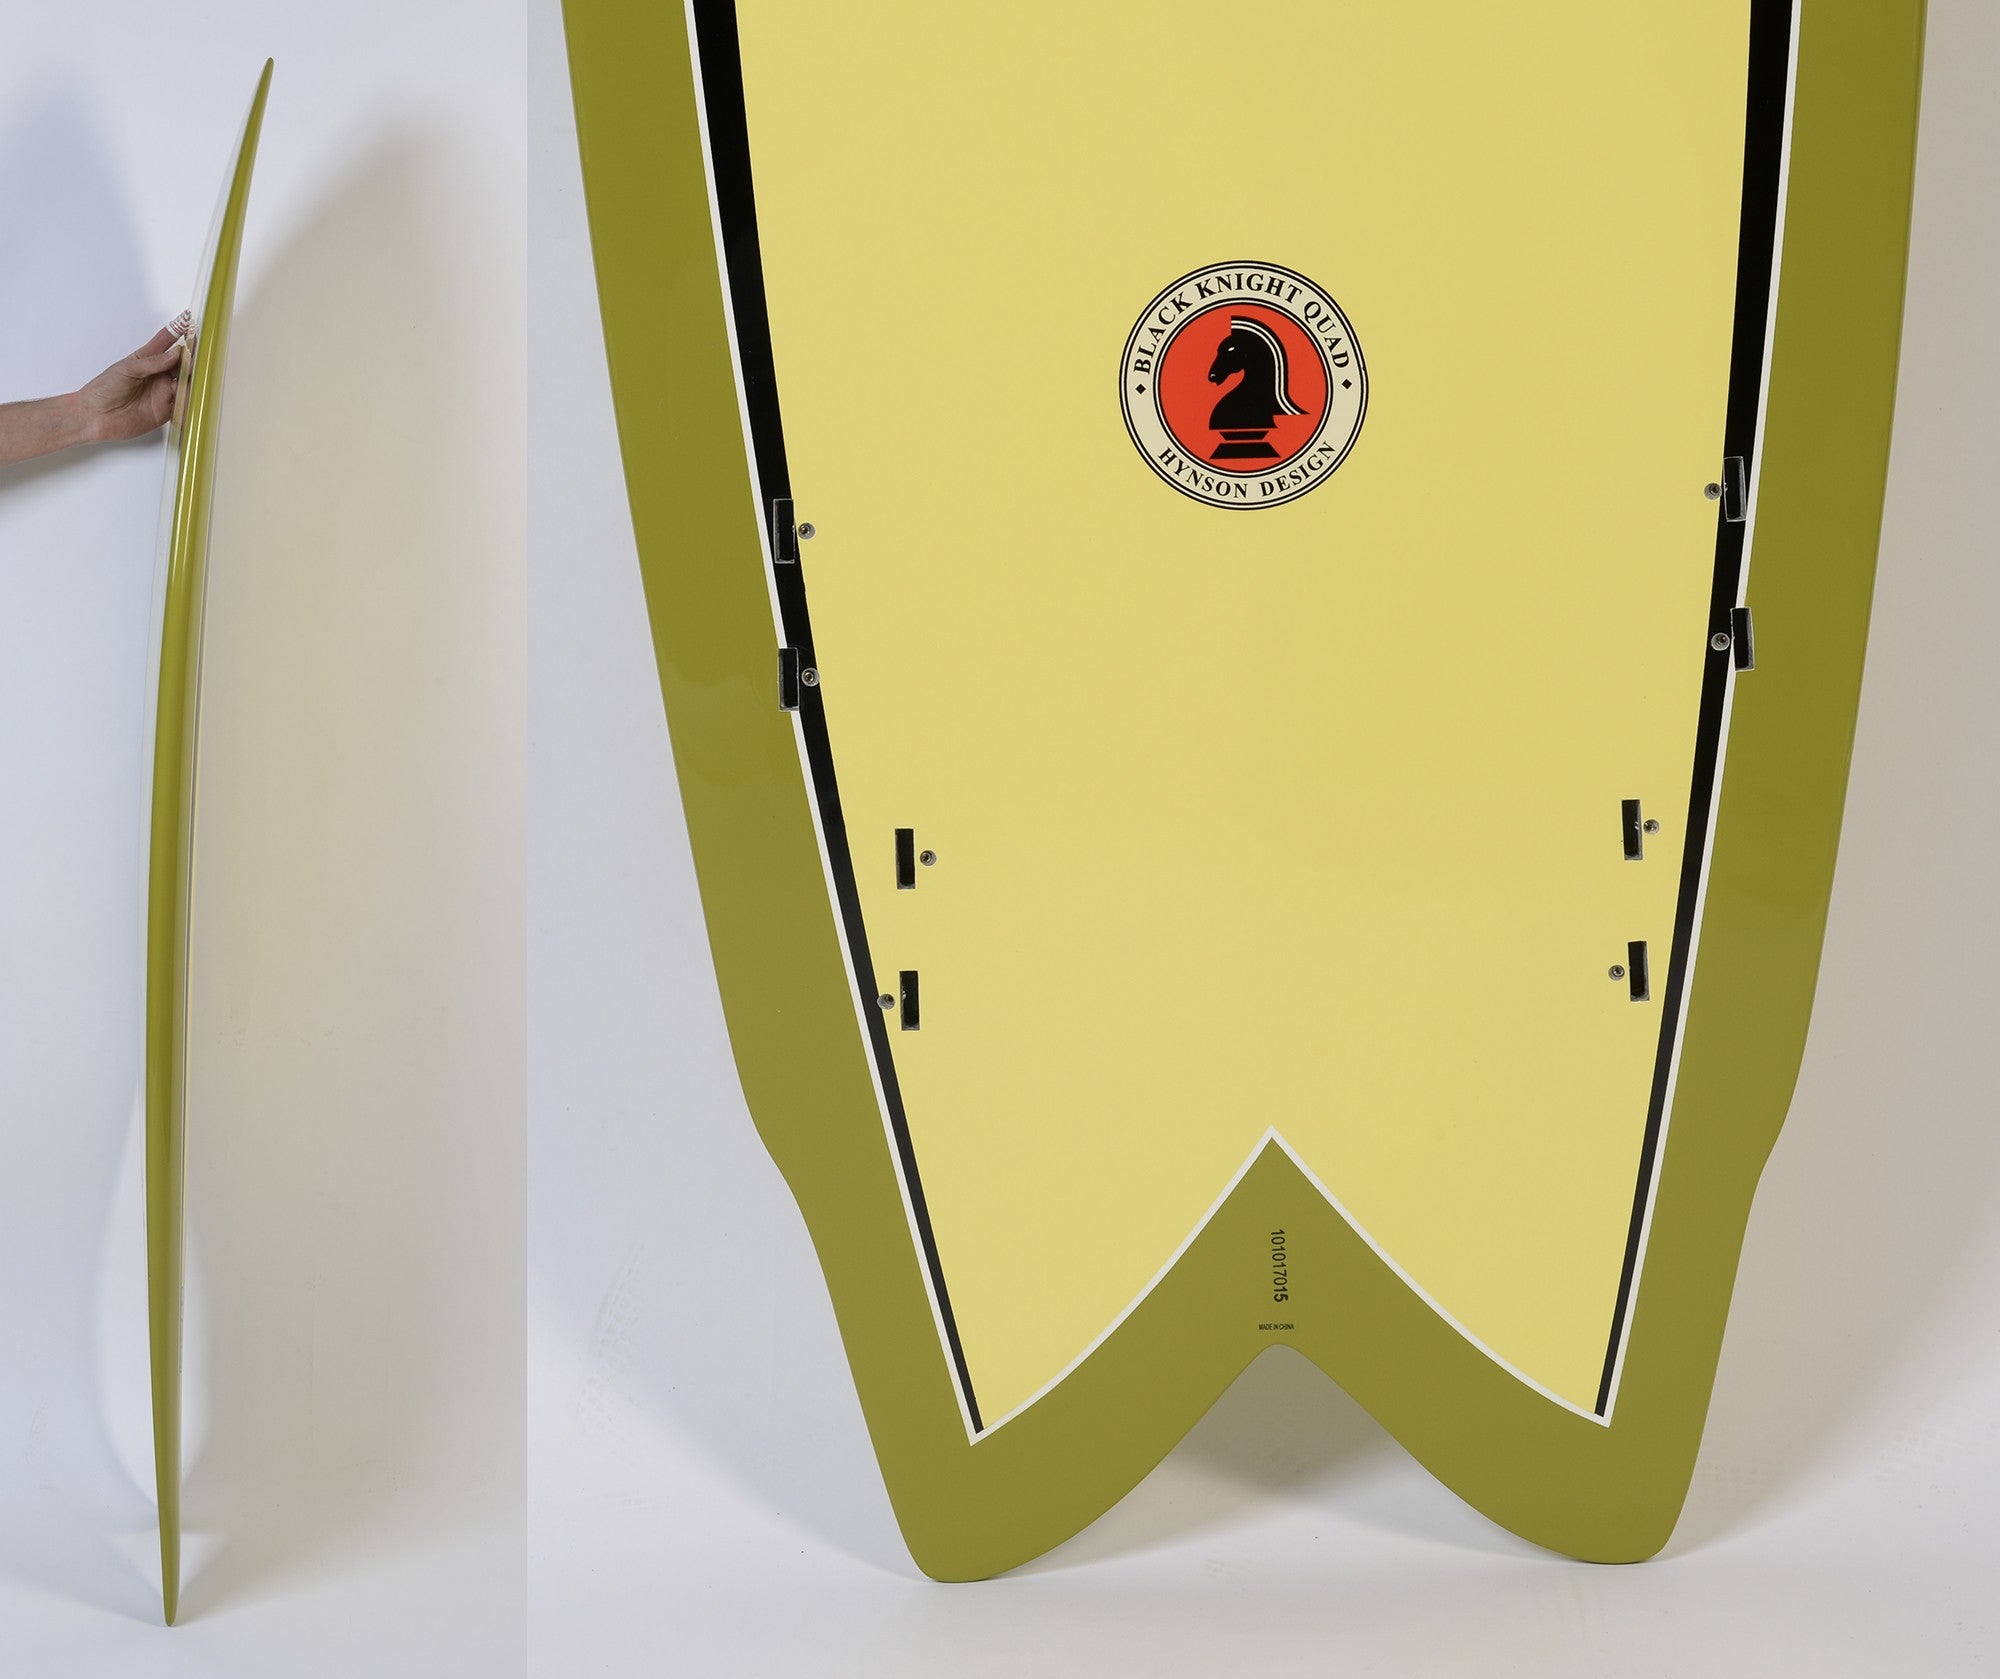 BOARDWORKS - Tabla de surf Hynson Black Knight Quad amarillo / verde (epoxi)